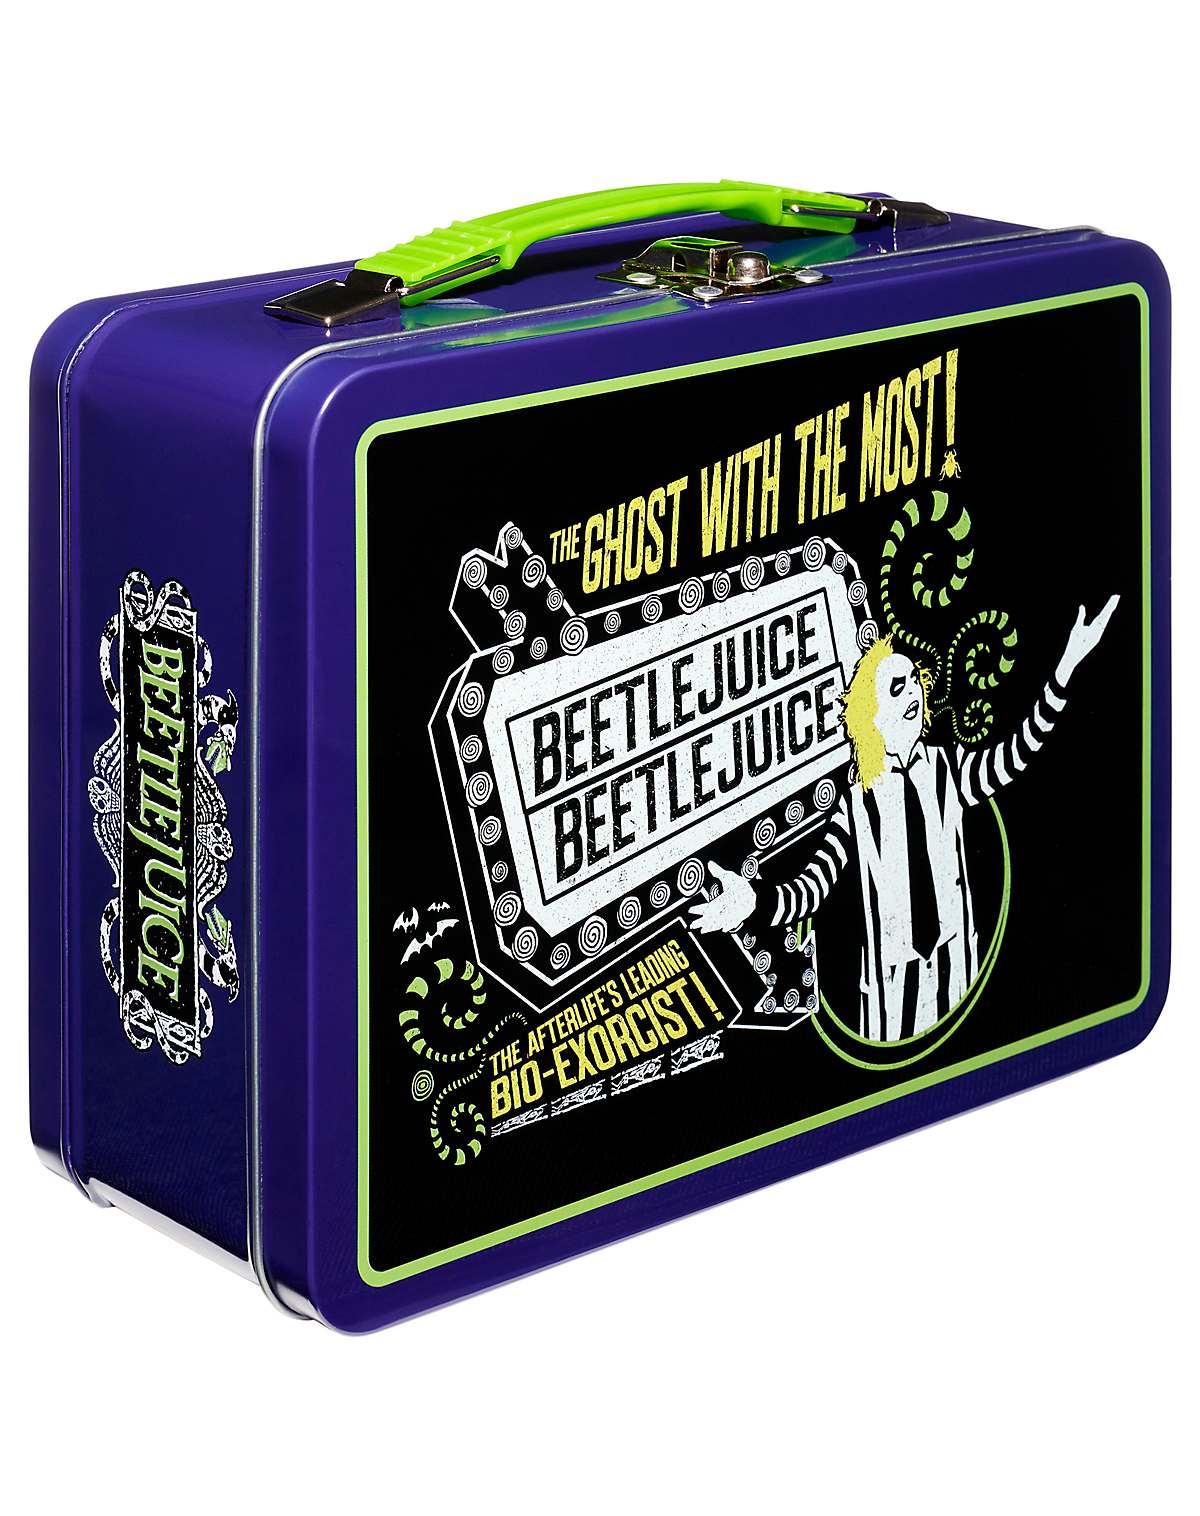 Beetlejuice Lunchbox